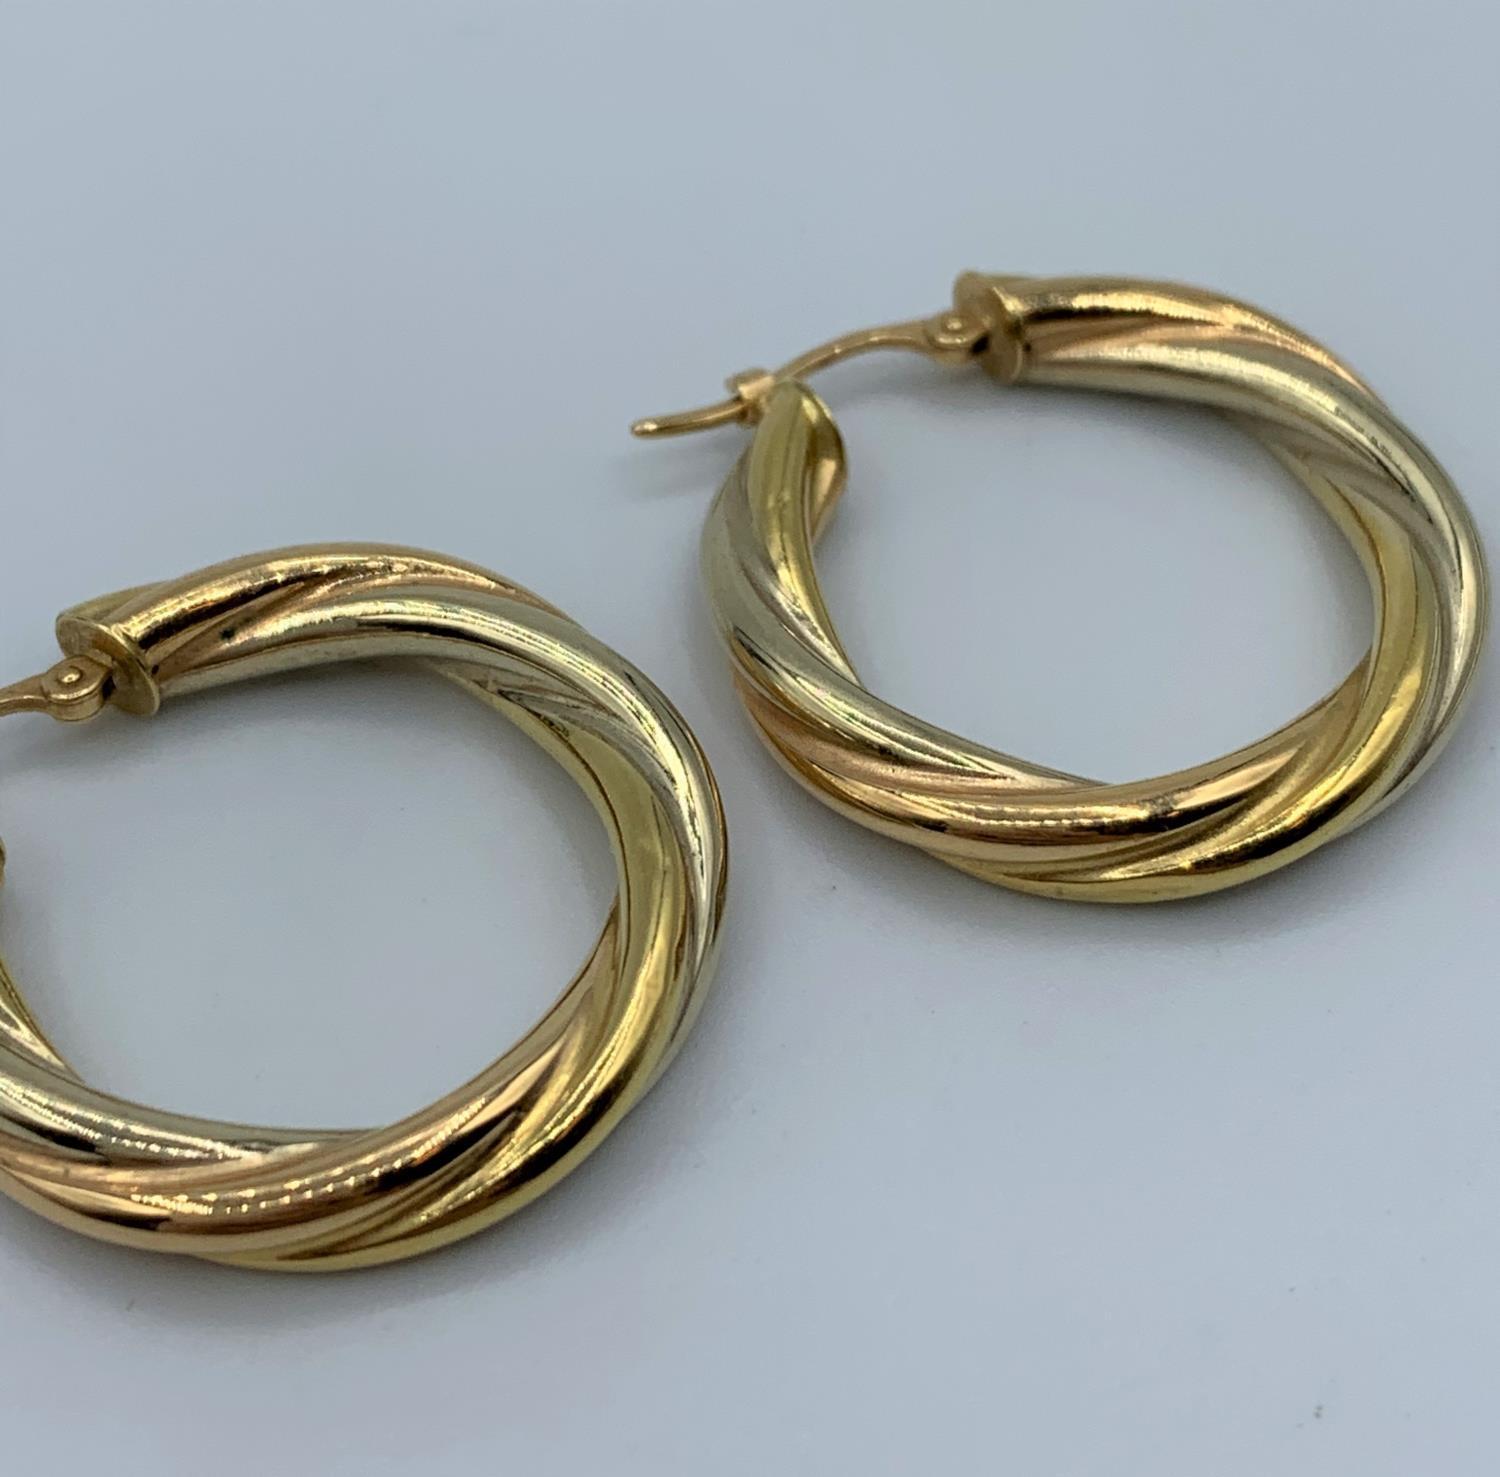 Pair of 18ct Twist Hoop Earrings, weight 2.4g - Image 3 of 3